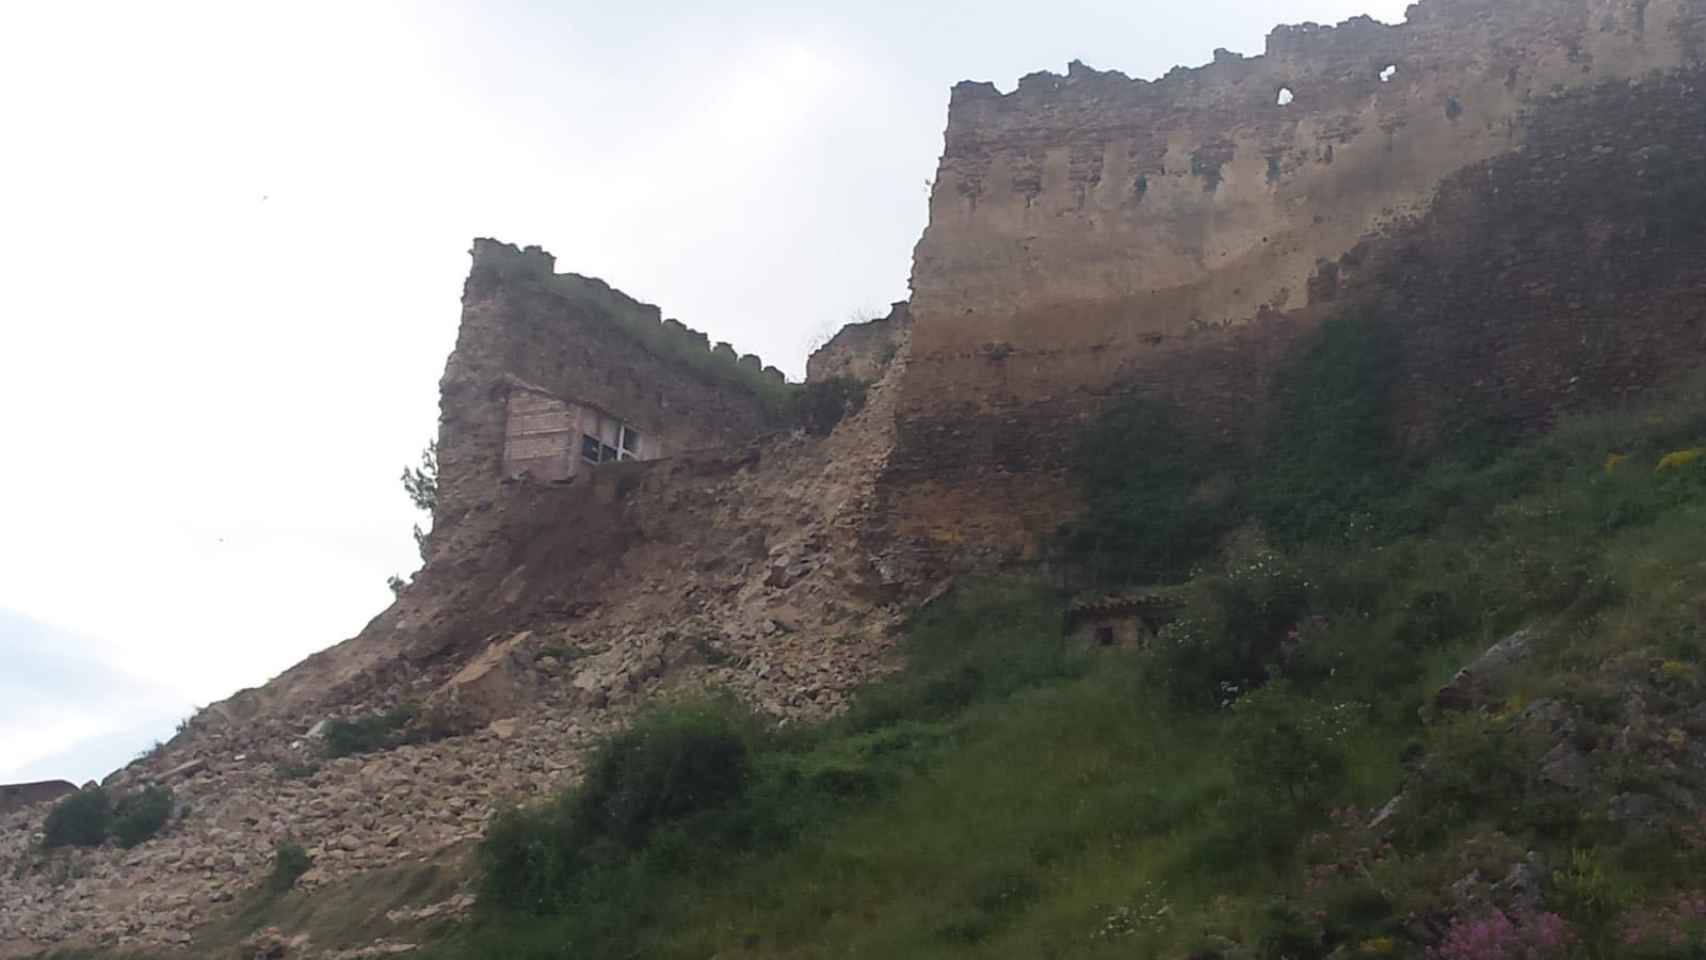 Vista del desprendimiento del lienzo del castillo.